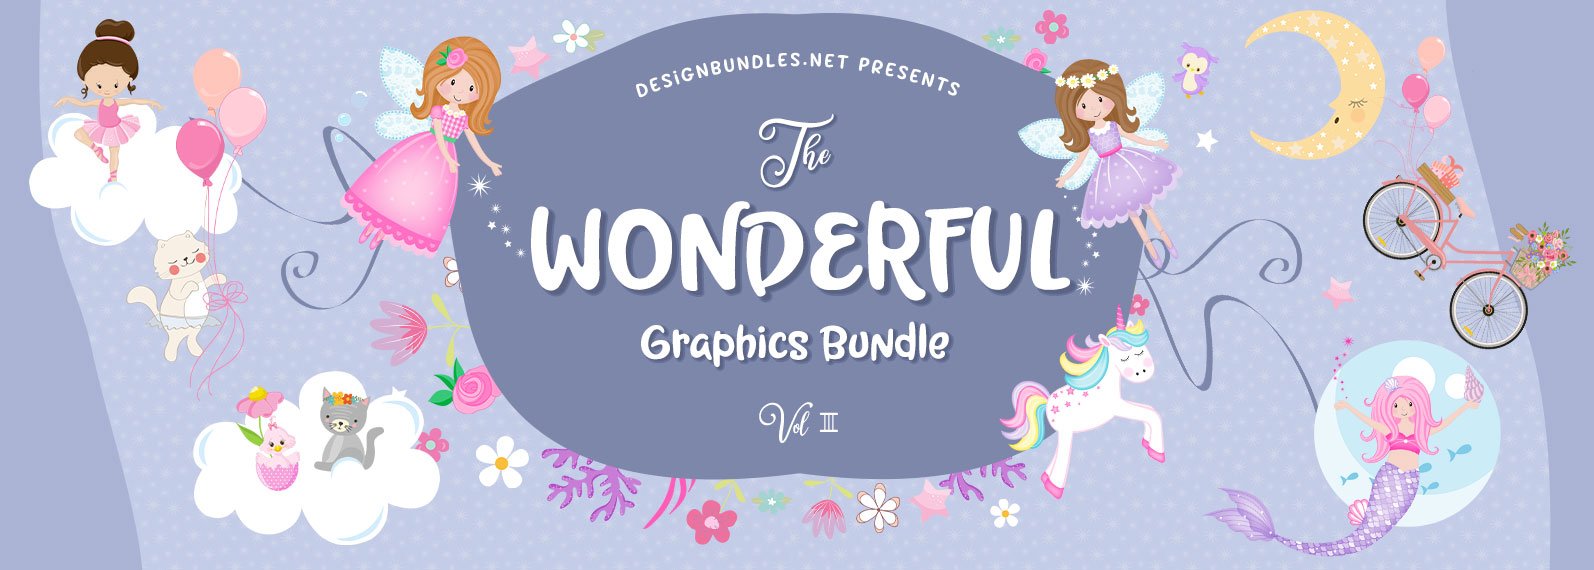 The Wonderful Graphics Bundle III Cover